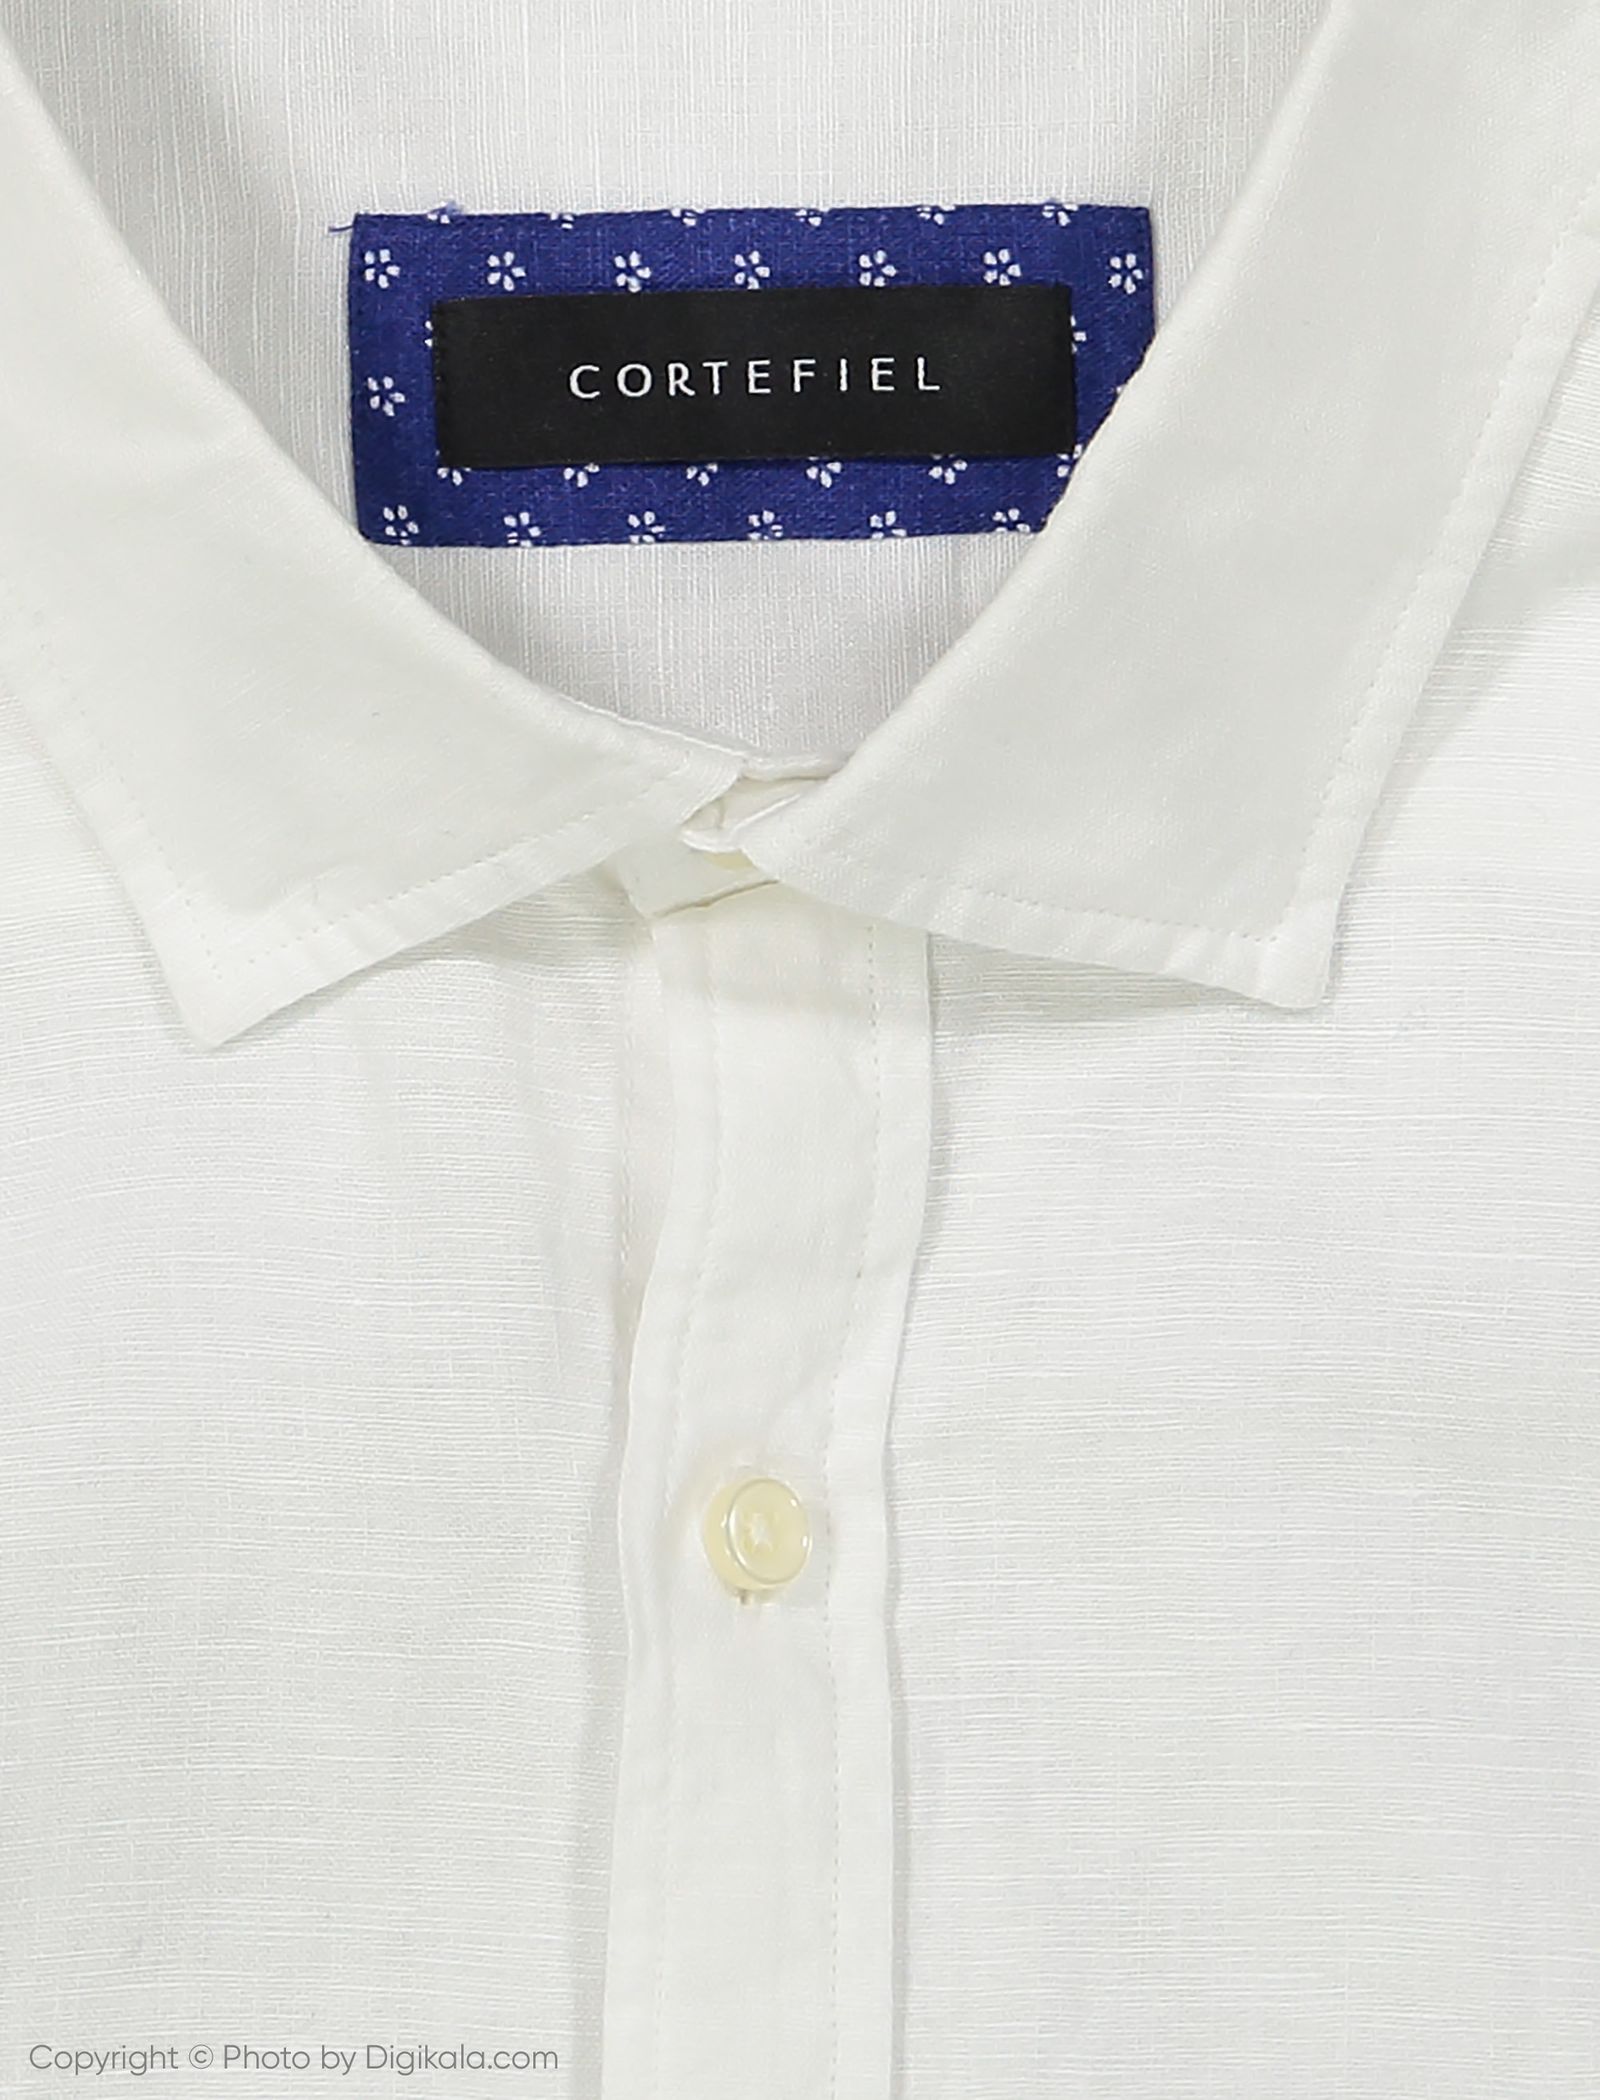 پیراهن مردانه کورتفیل مدل 2219085-99 - سفید - 4